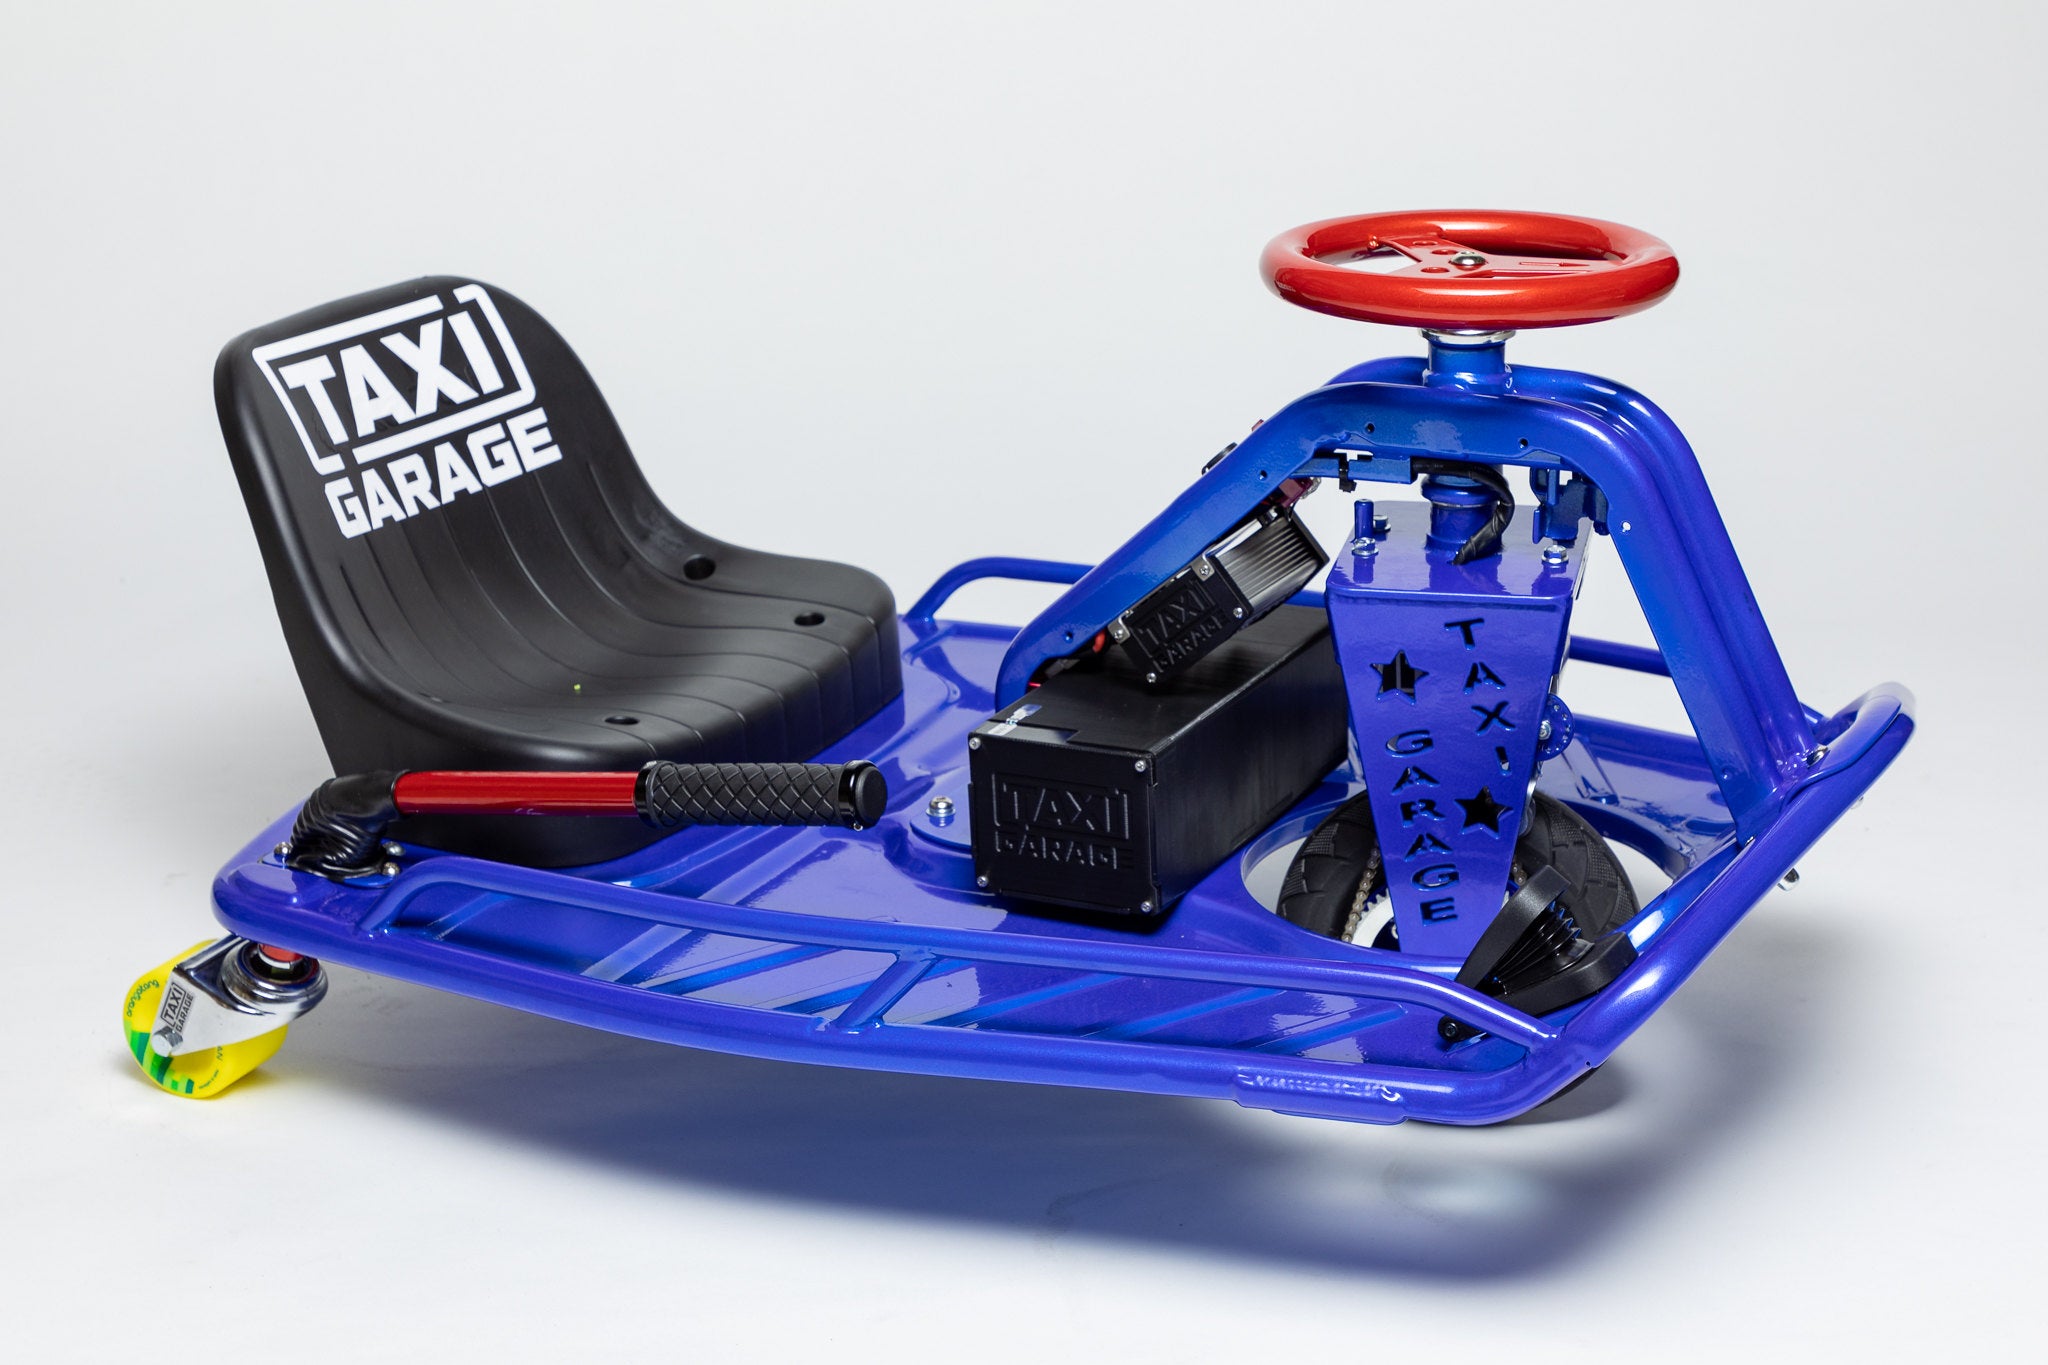 Build Your Custom Crazy Cart – TAXI GARAGE